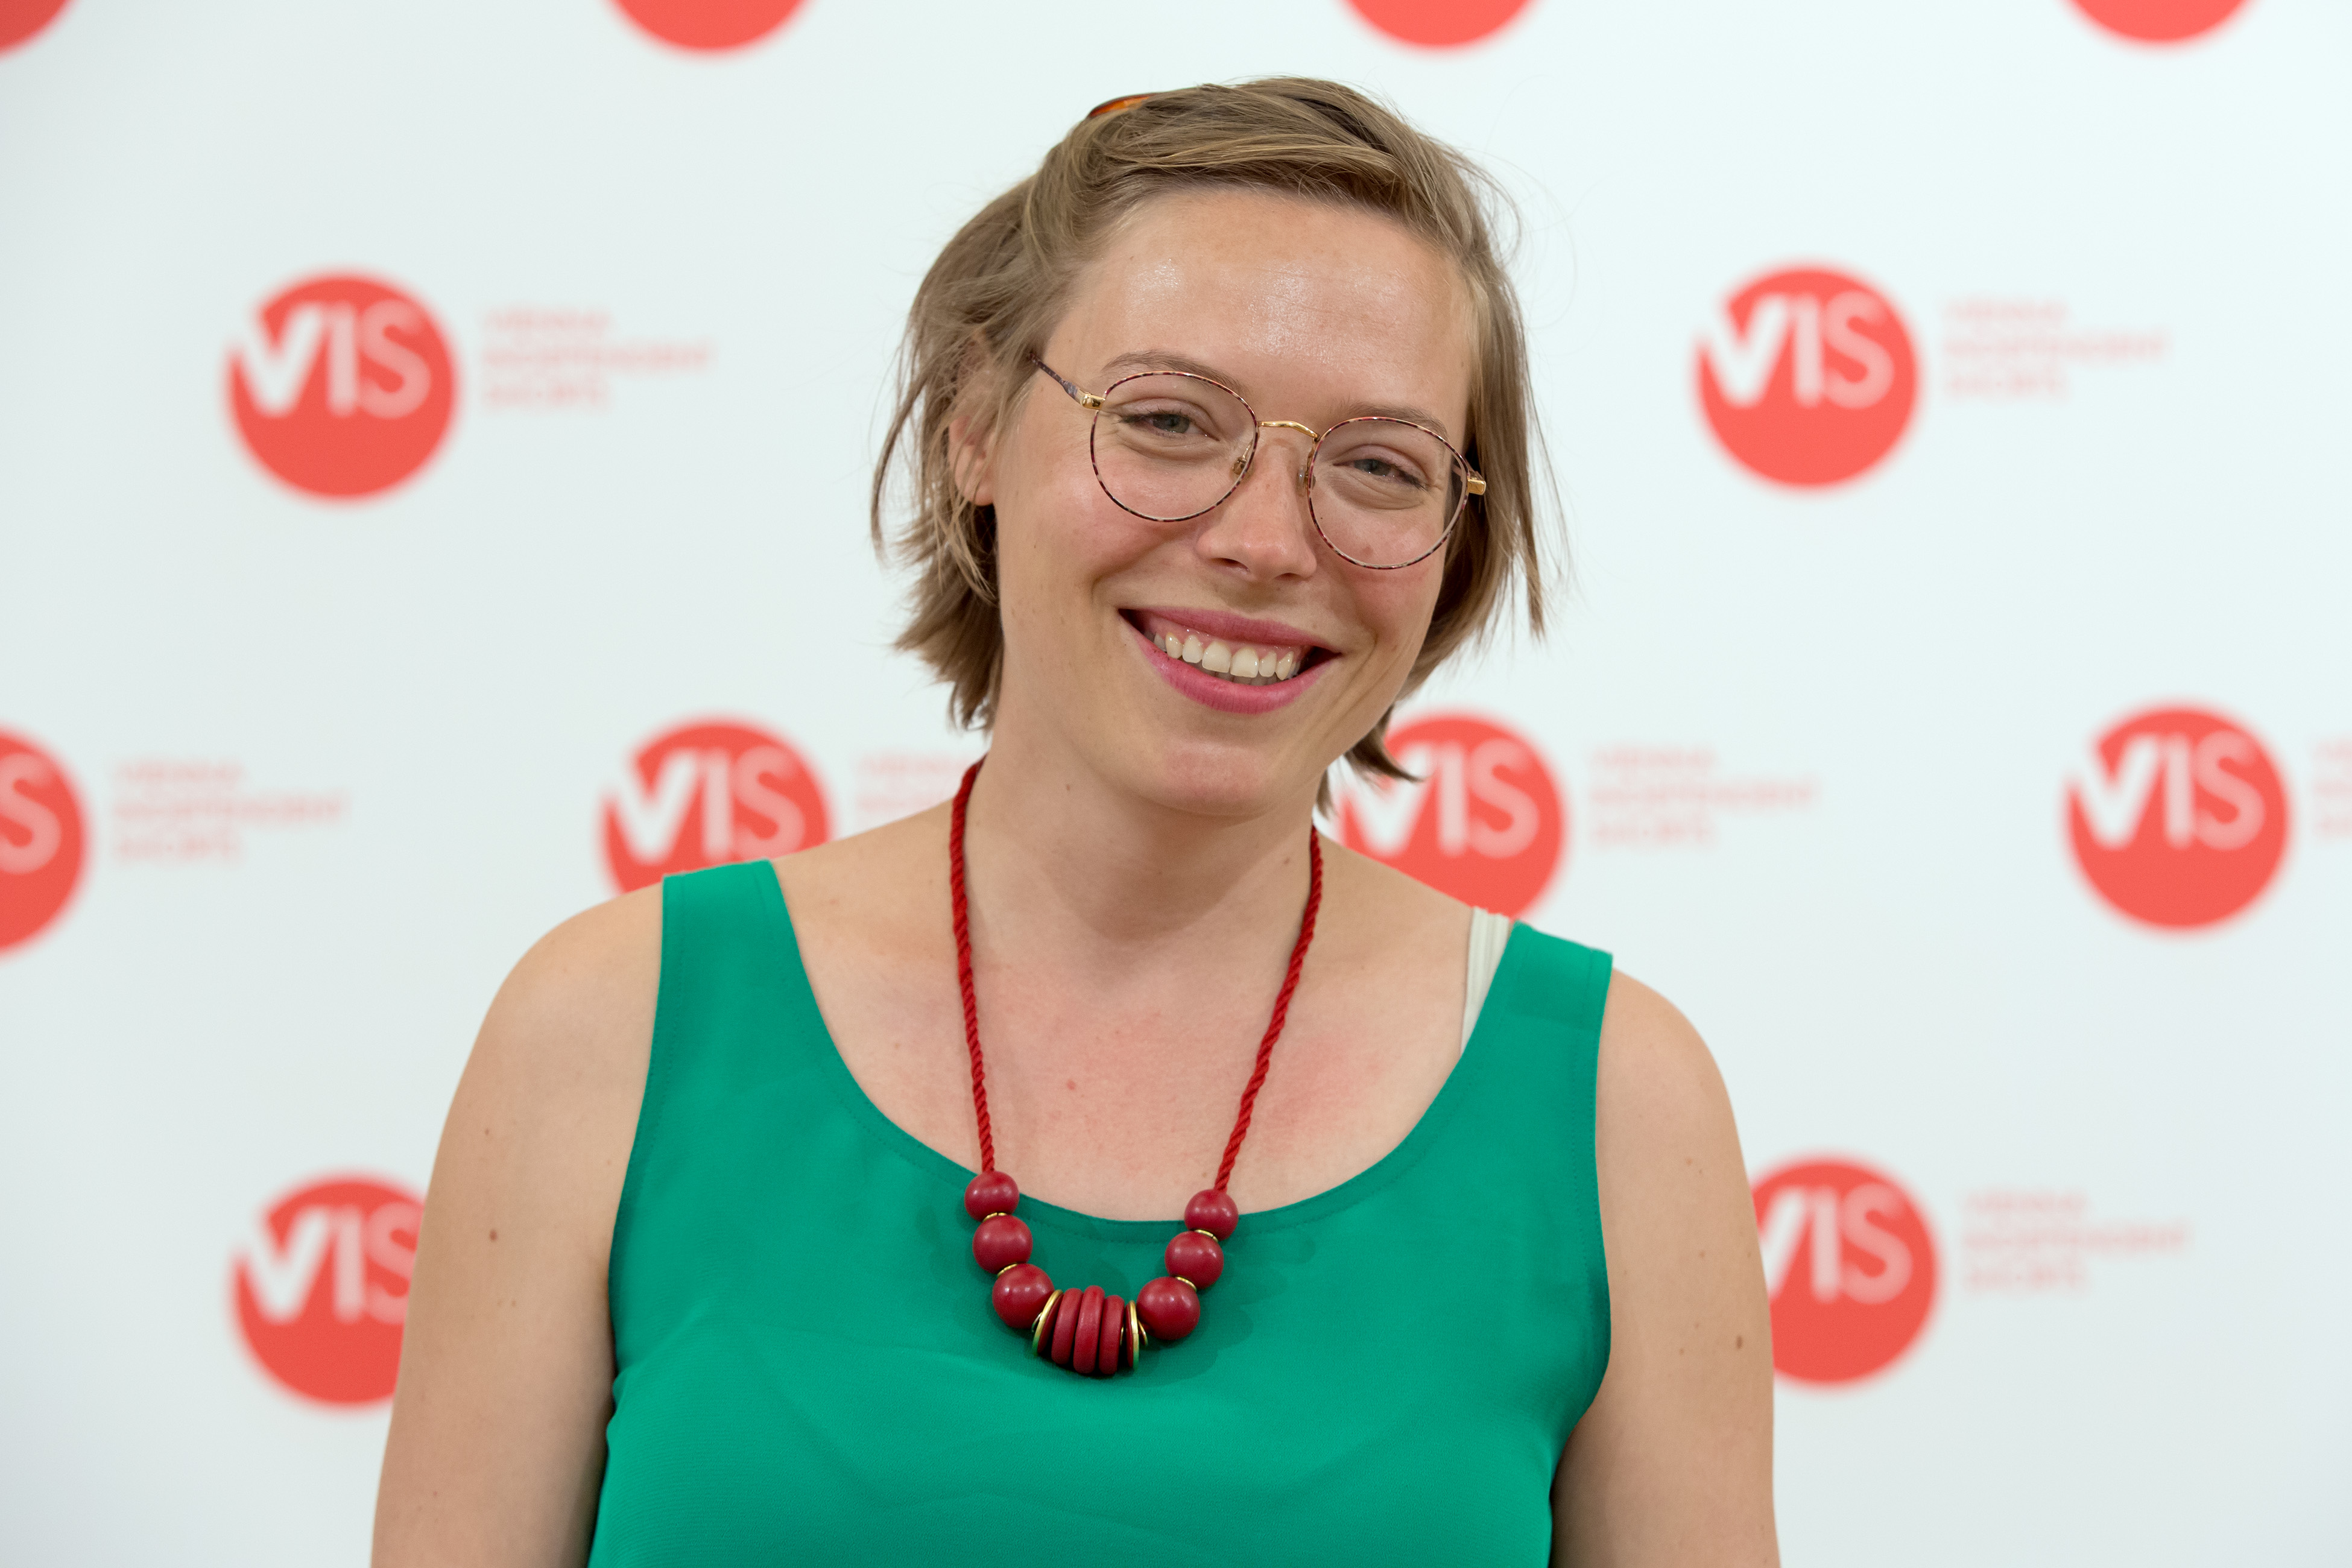 VIS2015 awards Jola Wieczorek